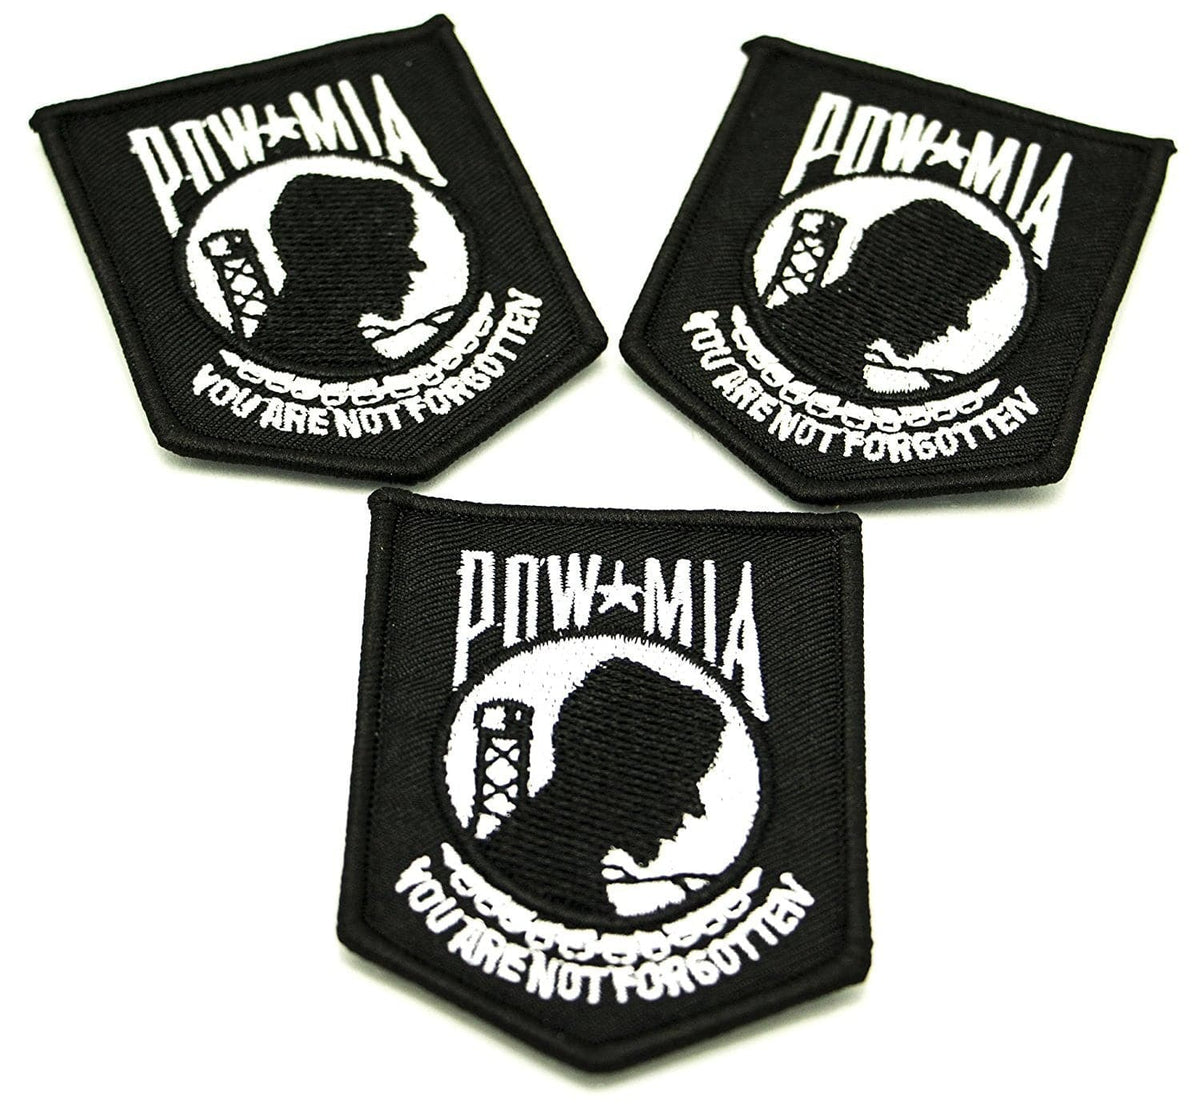 3 POW-MIA Patches